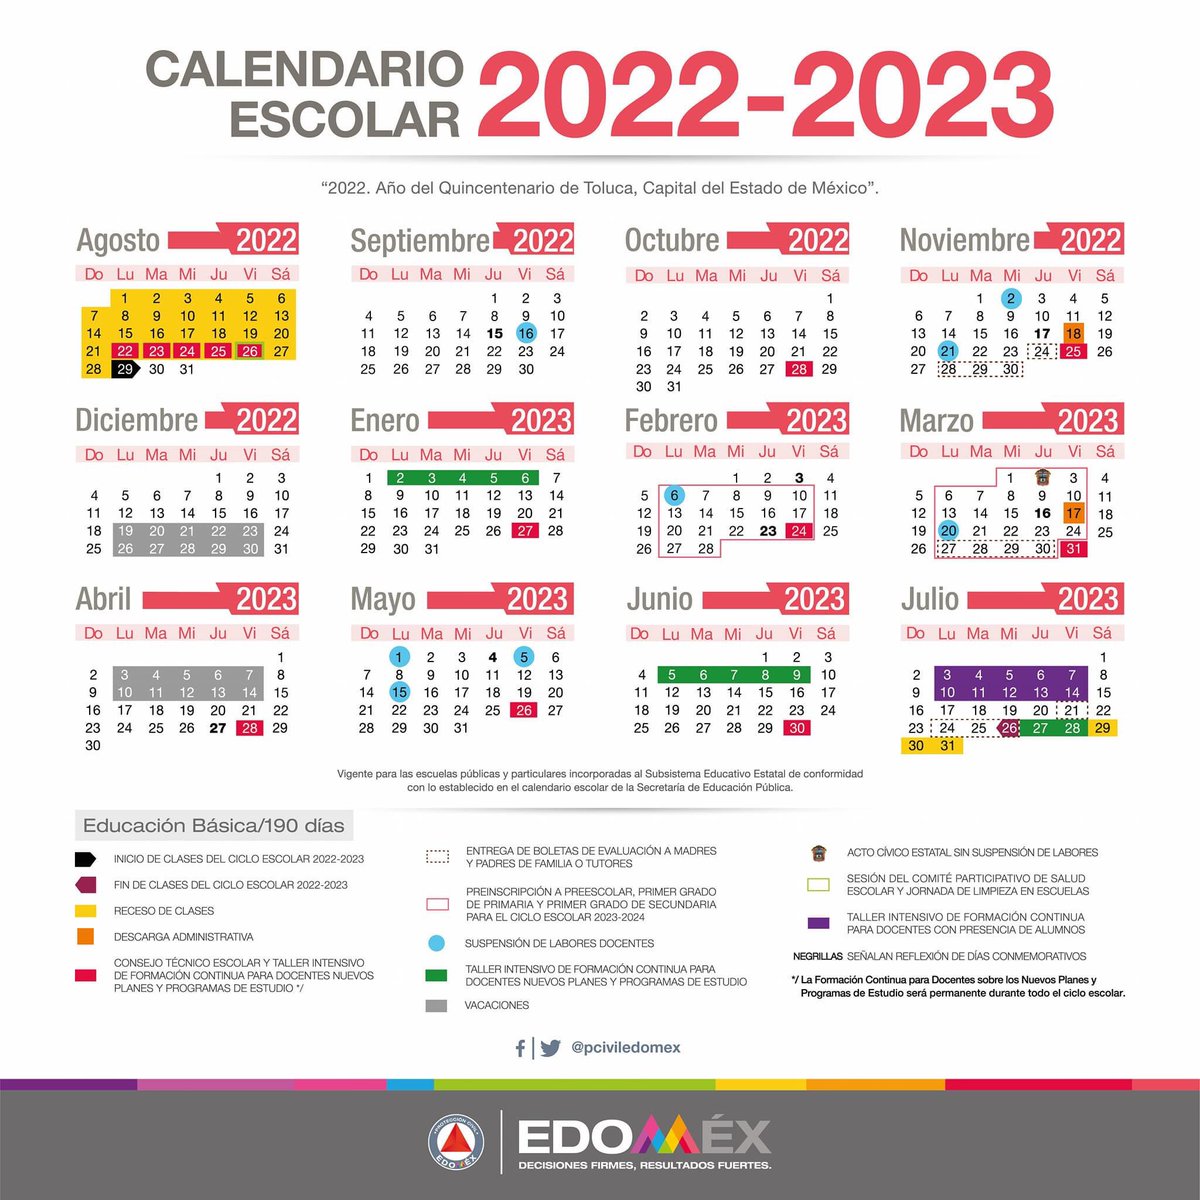 Les compartimos el #CalendarioEscolar de Educación Básica 2022-2023.
@geramonro05 @TinocoGRogelio